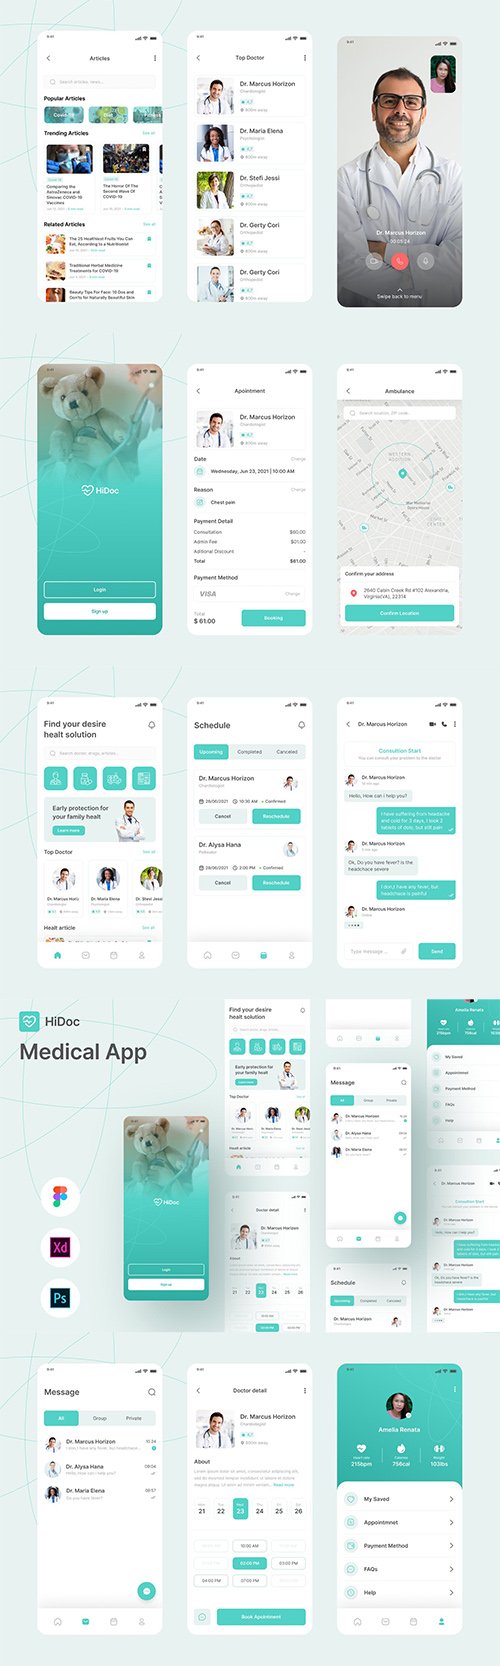 HiDoc - Medical App